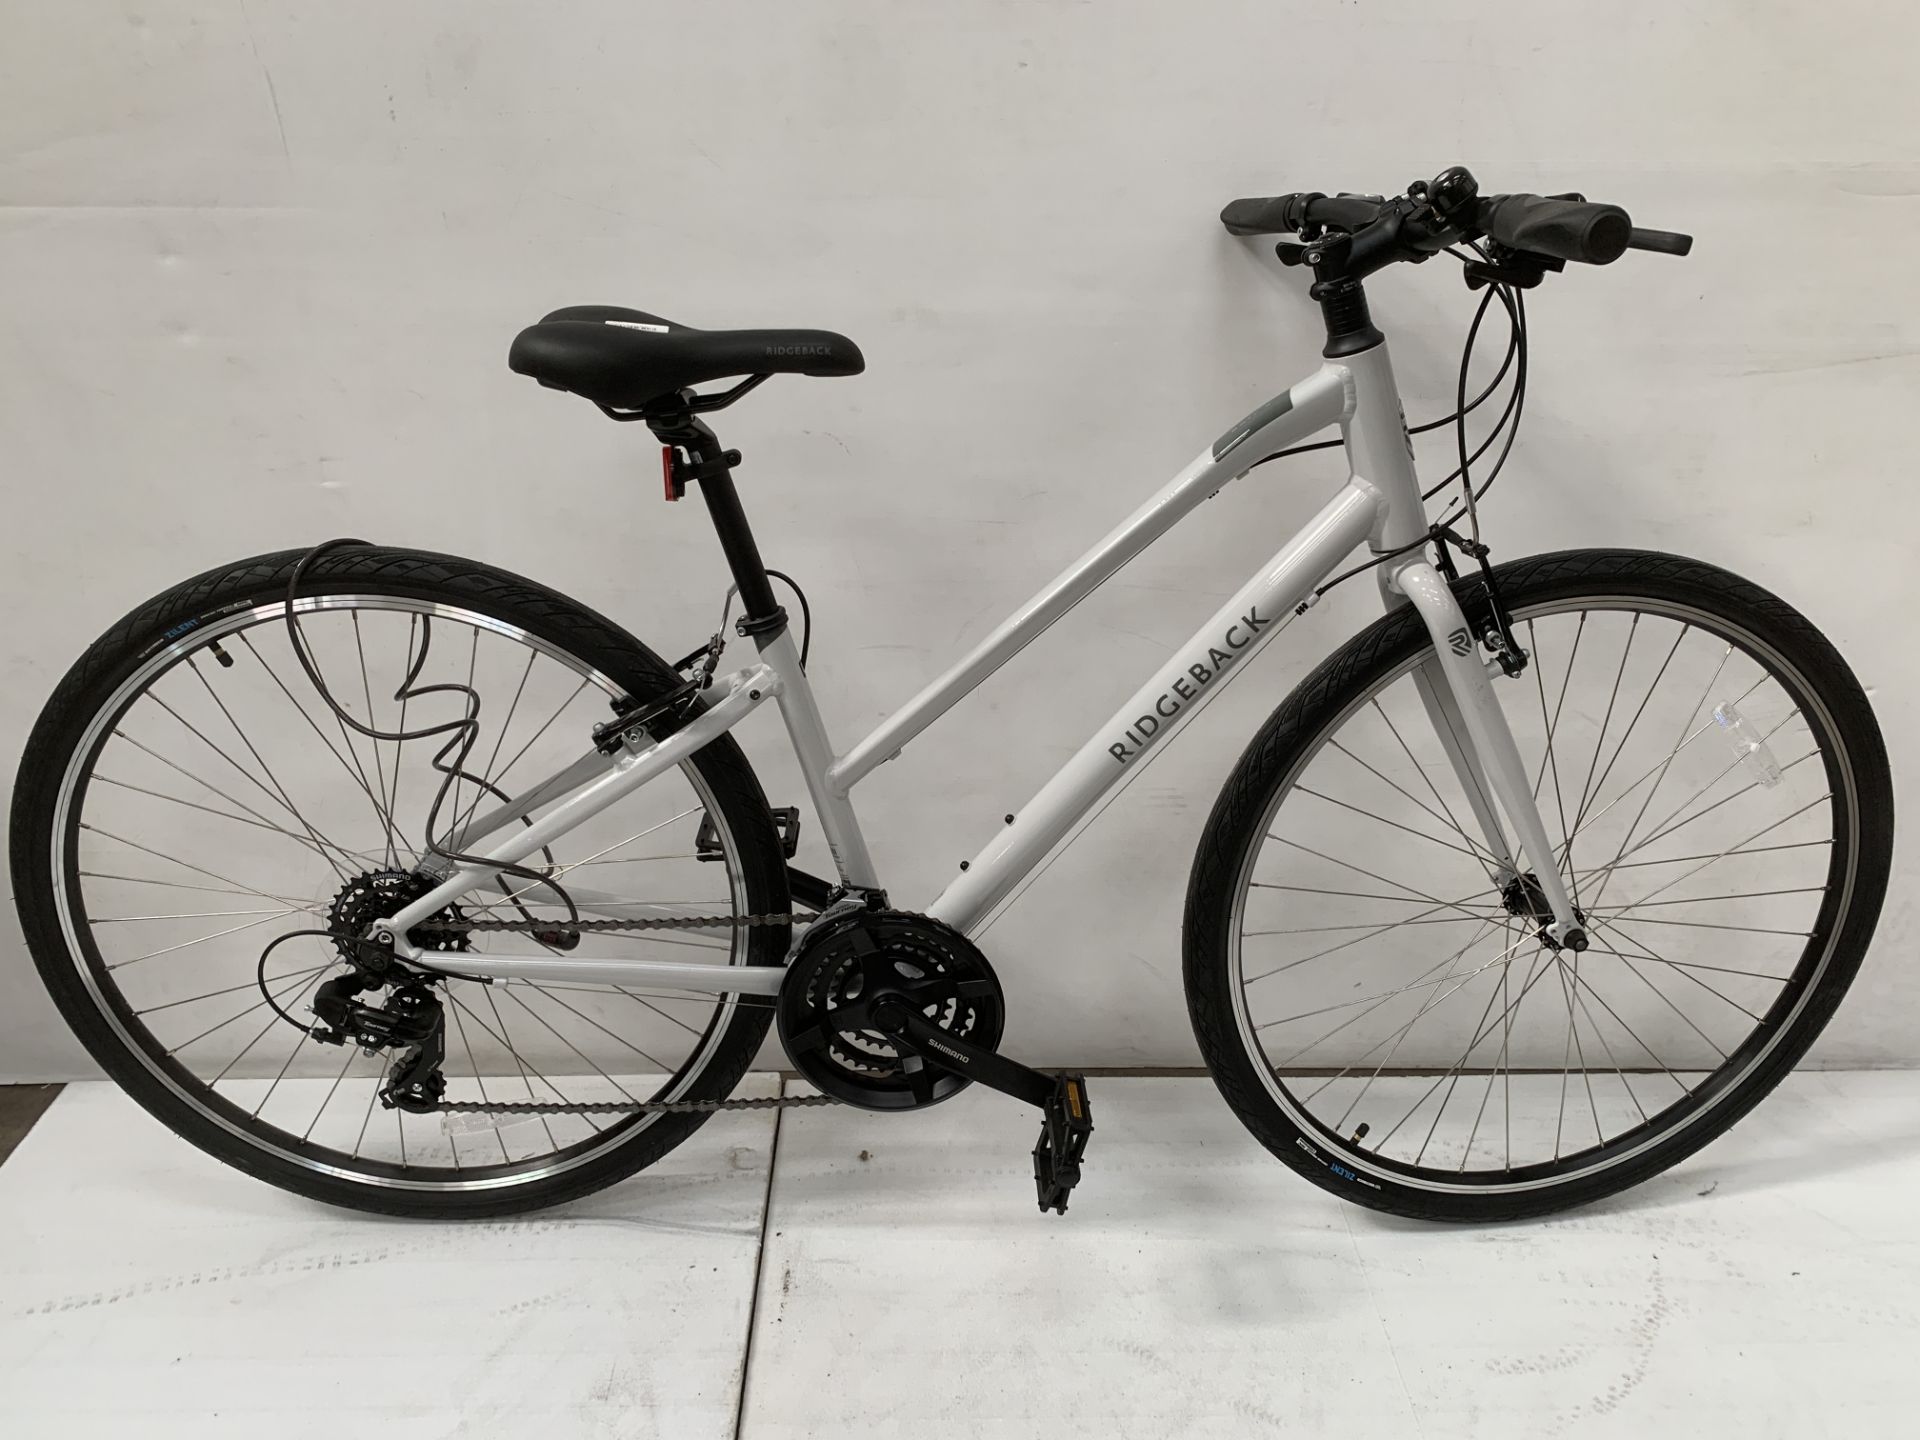 Ridgeback Motion ST 'S' Bicycle. RRP £549